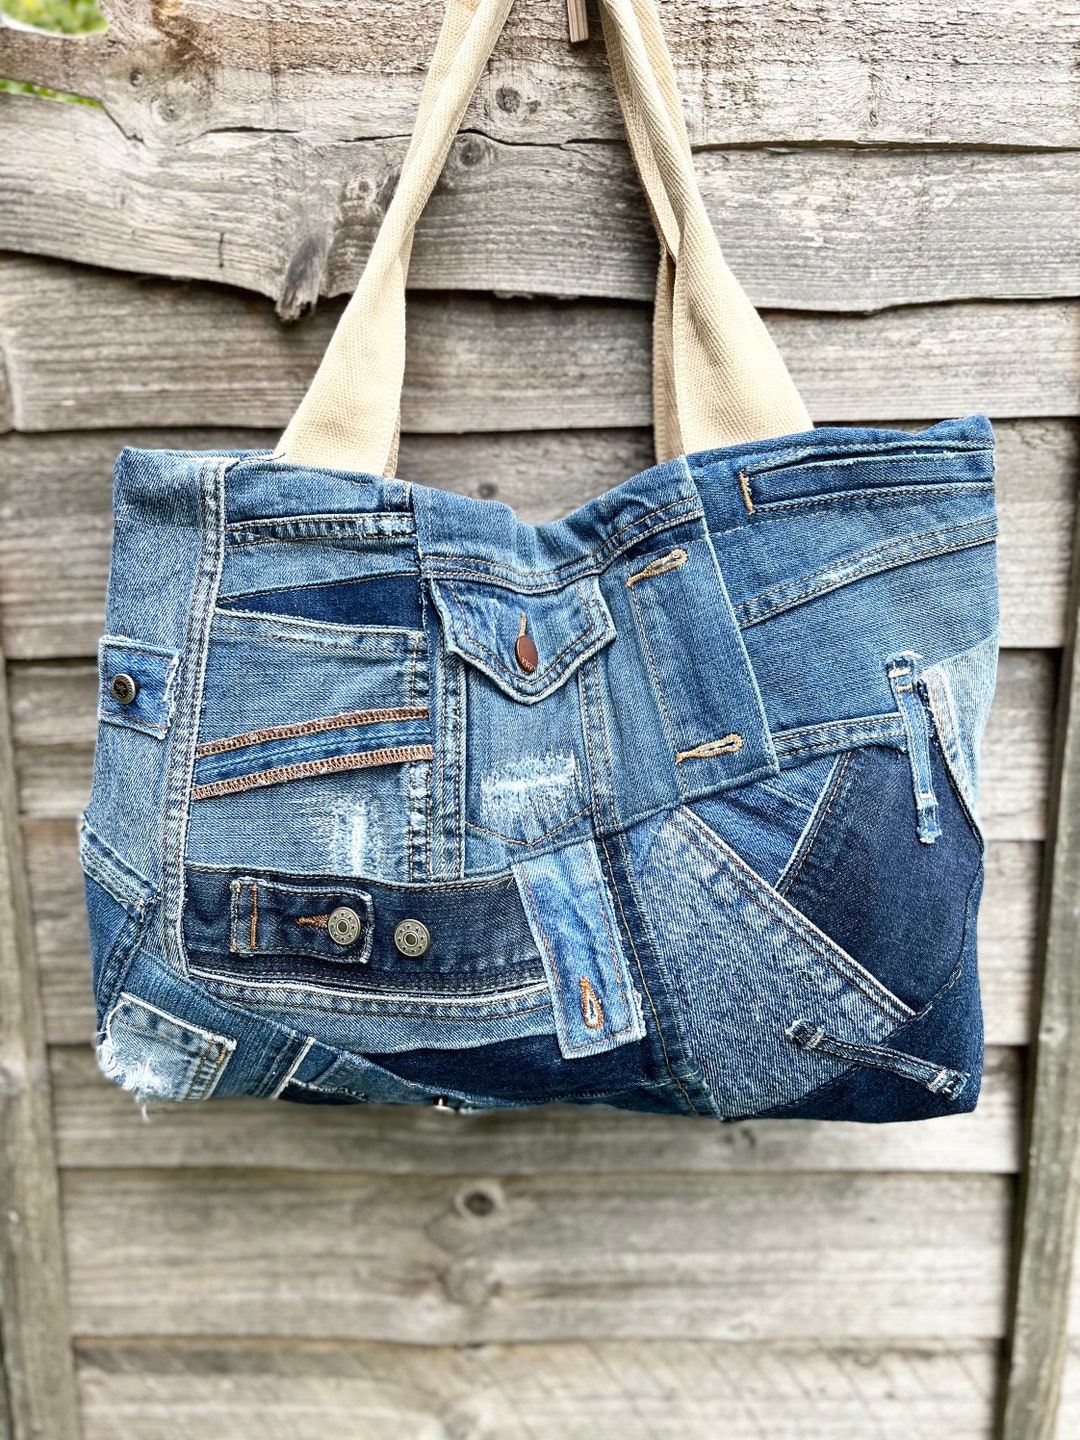 PATTERNED BOTH Sides Shoulder Bag/ Blue Denim Bag/ Vintage Denim/ Jeans ...